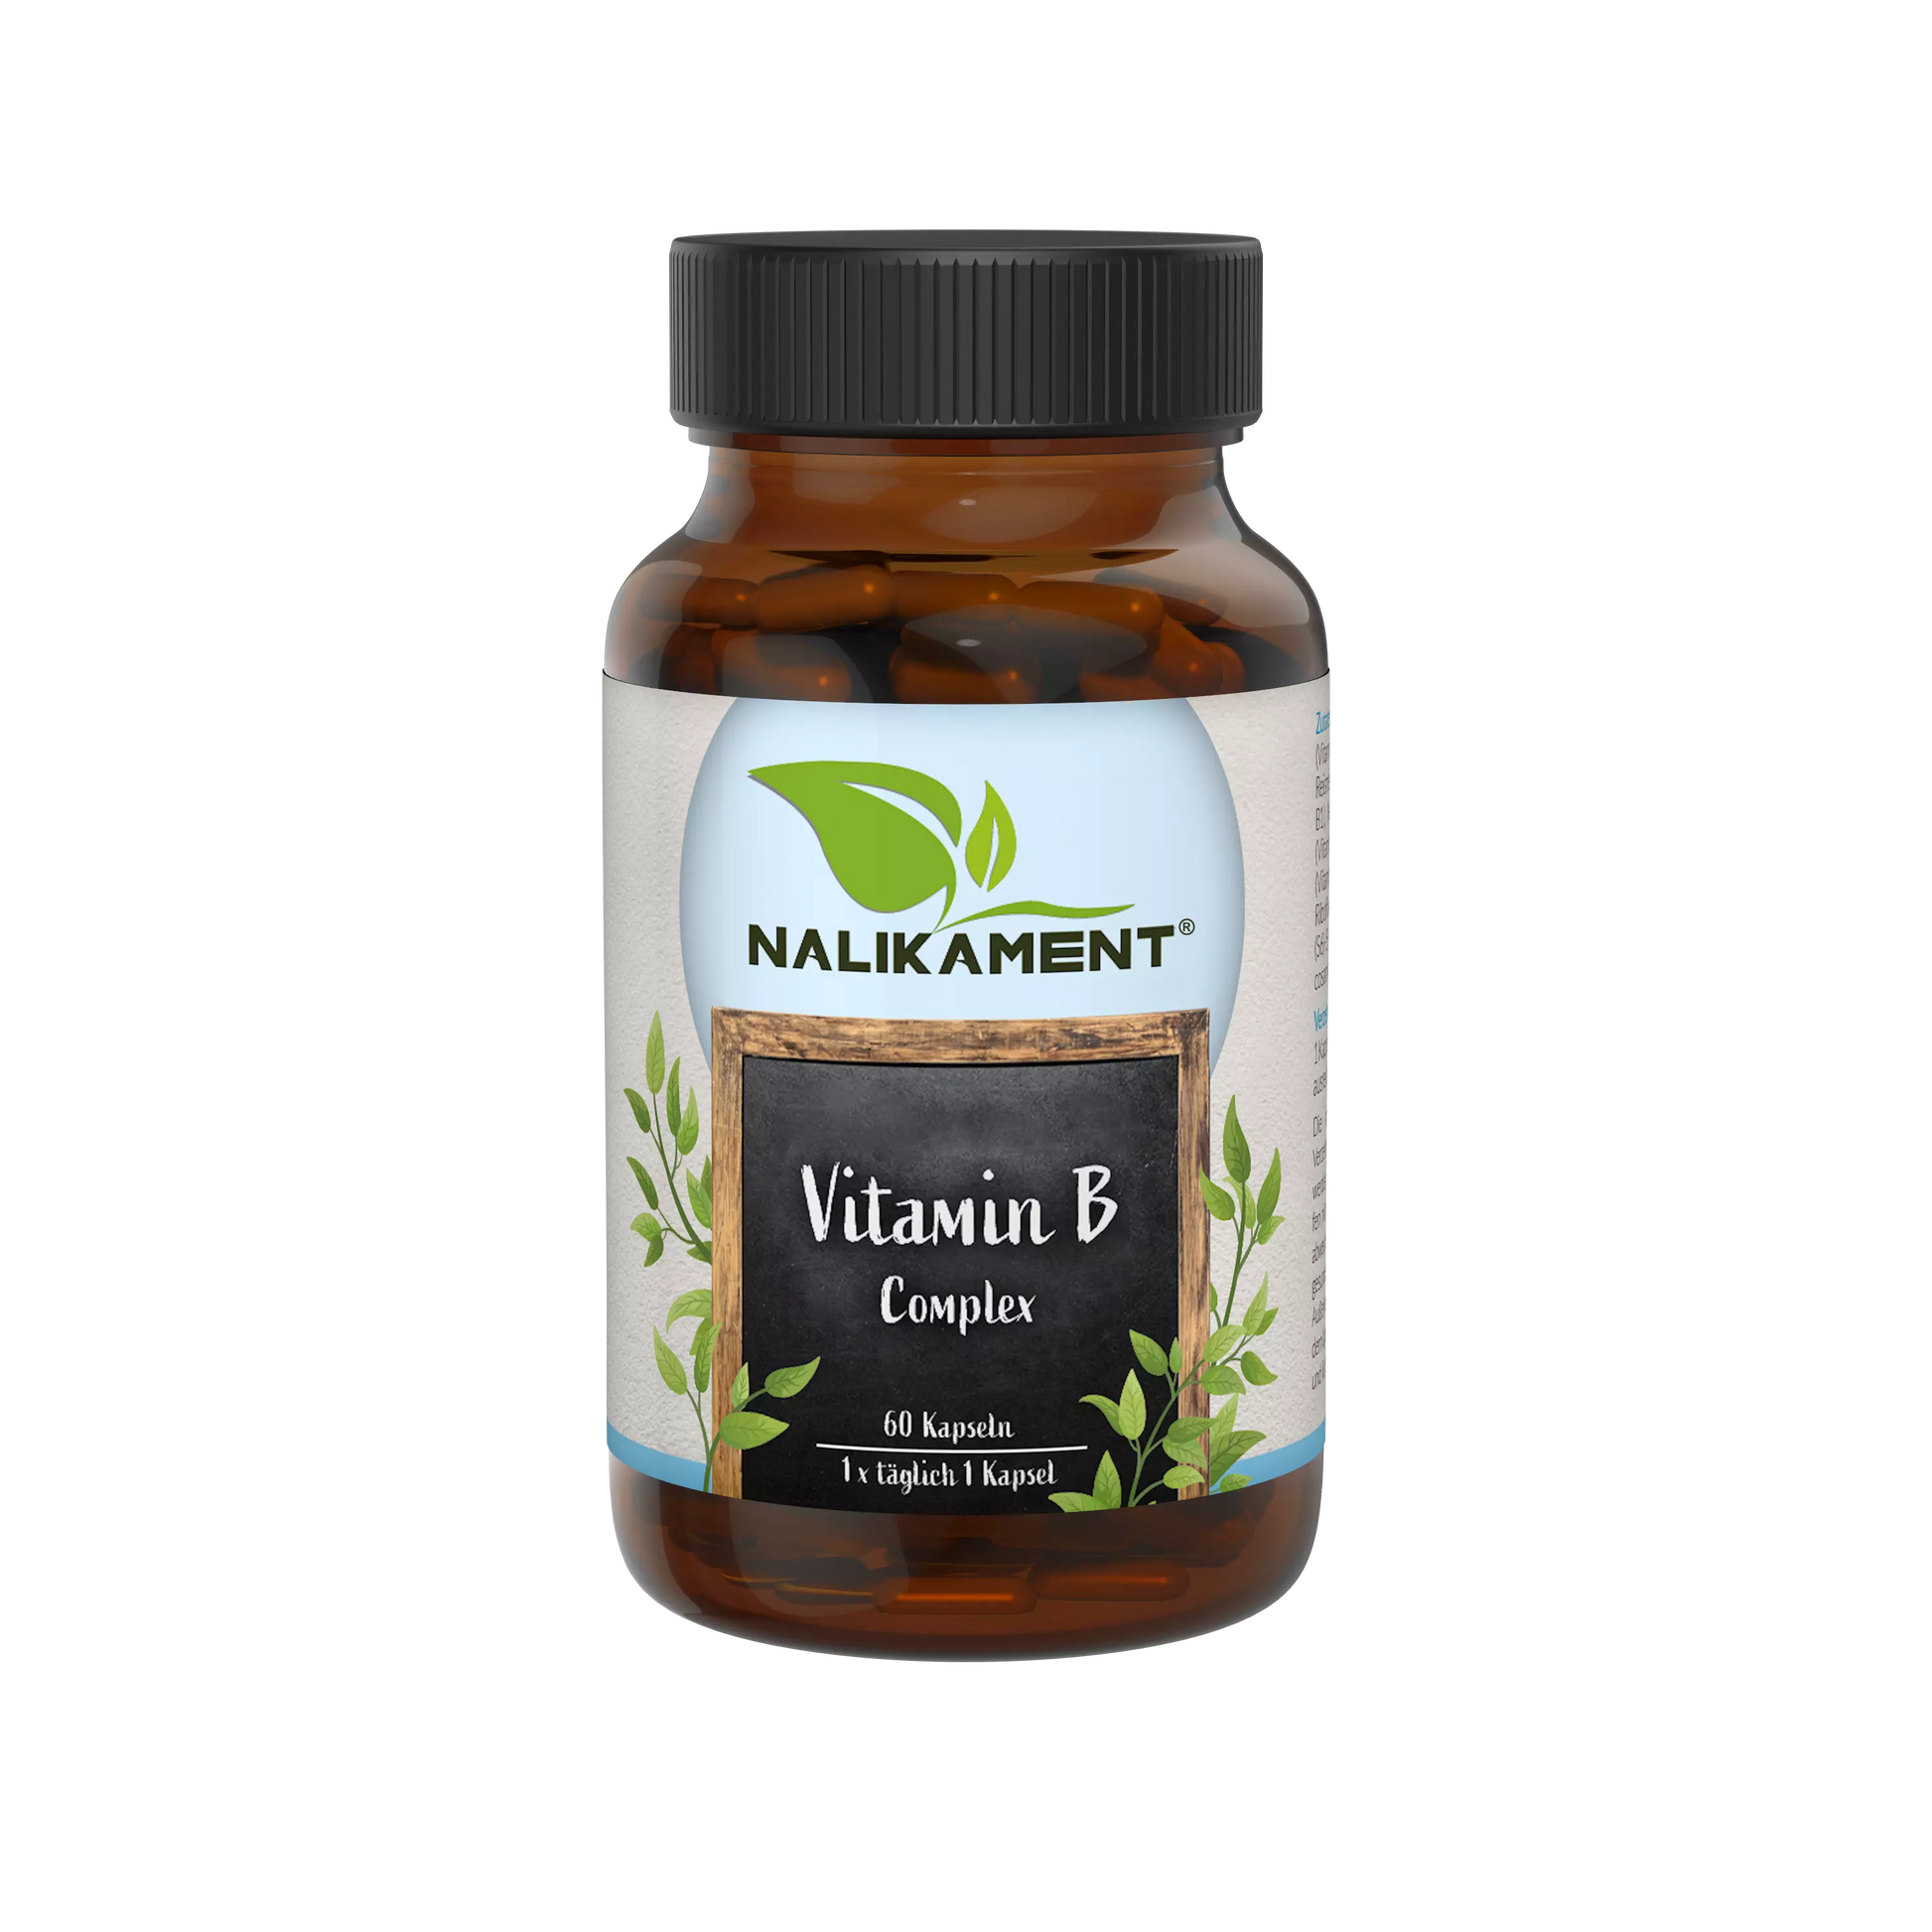 Nahrungsergänzungsmittel-Flasche mit Vitamin B-Komplex zur Unterstützung des Nervensystems und zur Verbesserung des Stoffwechsels.